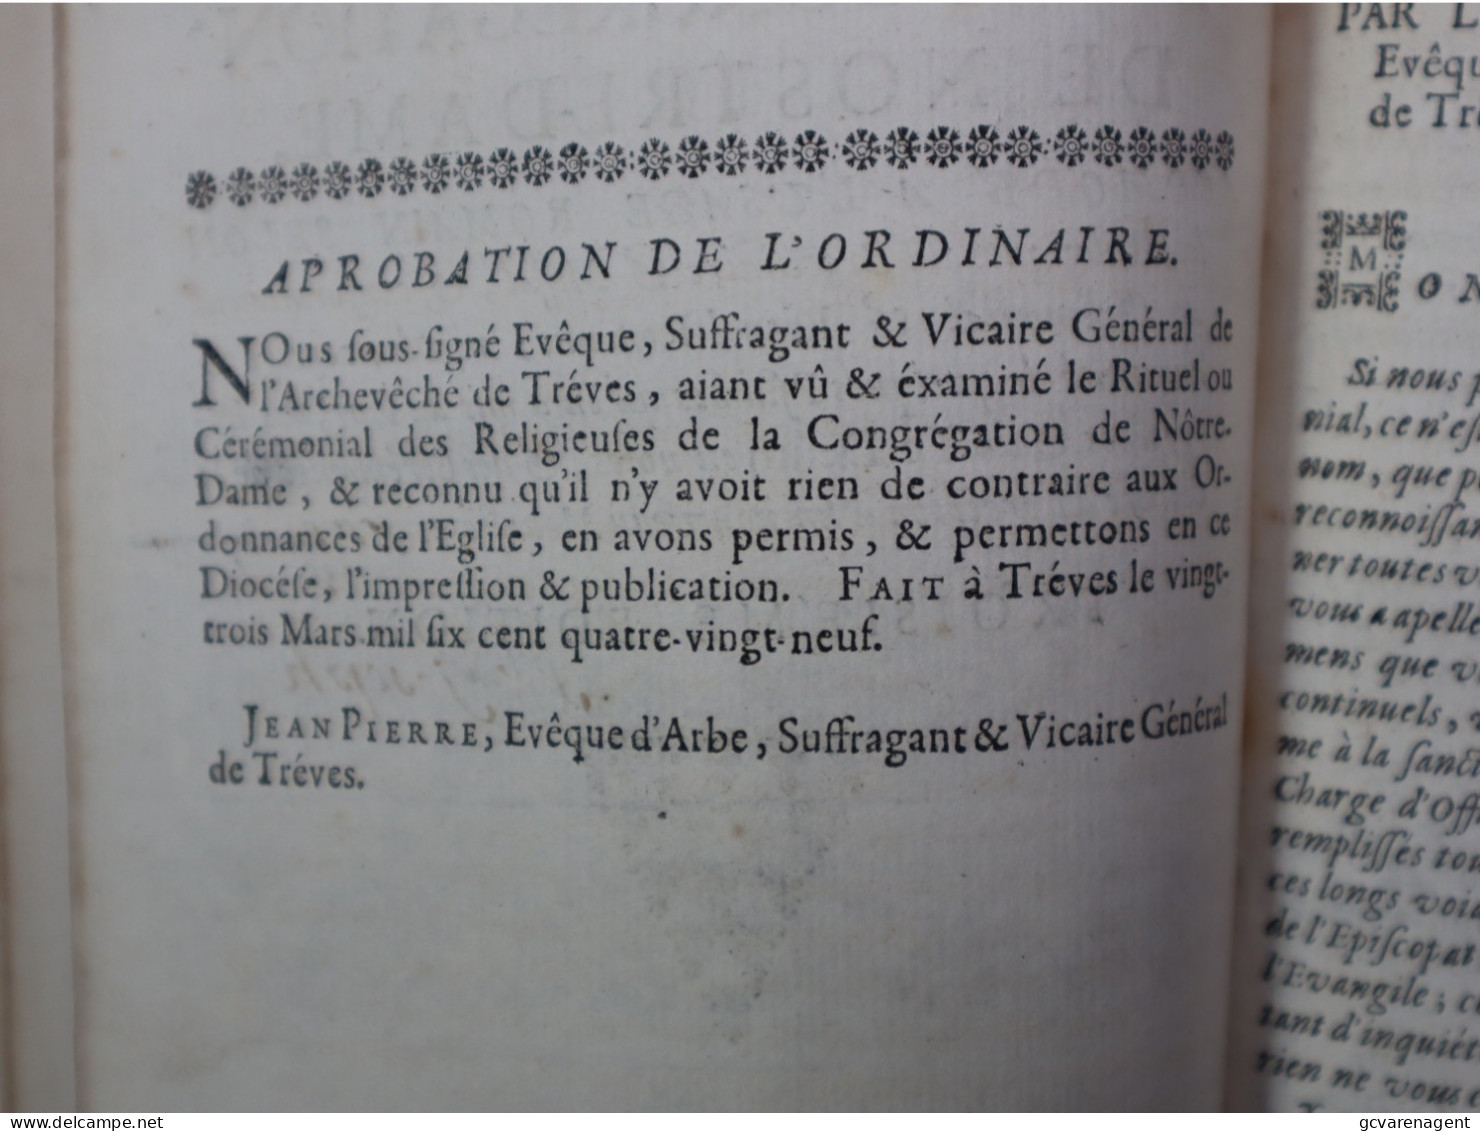 1690  CEREMONIAL DES RELIGIEUSES DE LA CONGREGATION DE NOSTRE DAME = VOIR DESCRIPTION ET IMAGES - Ante 18imo Secolo